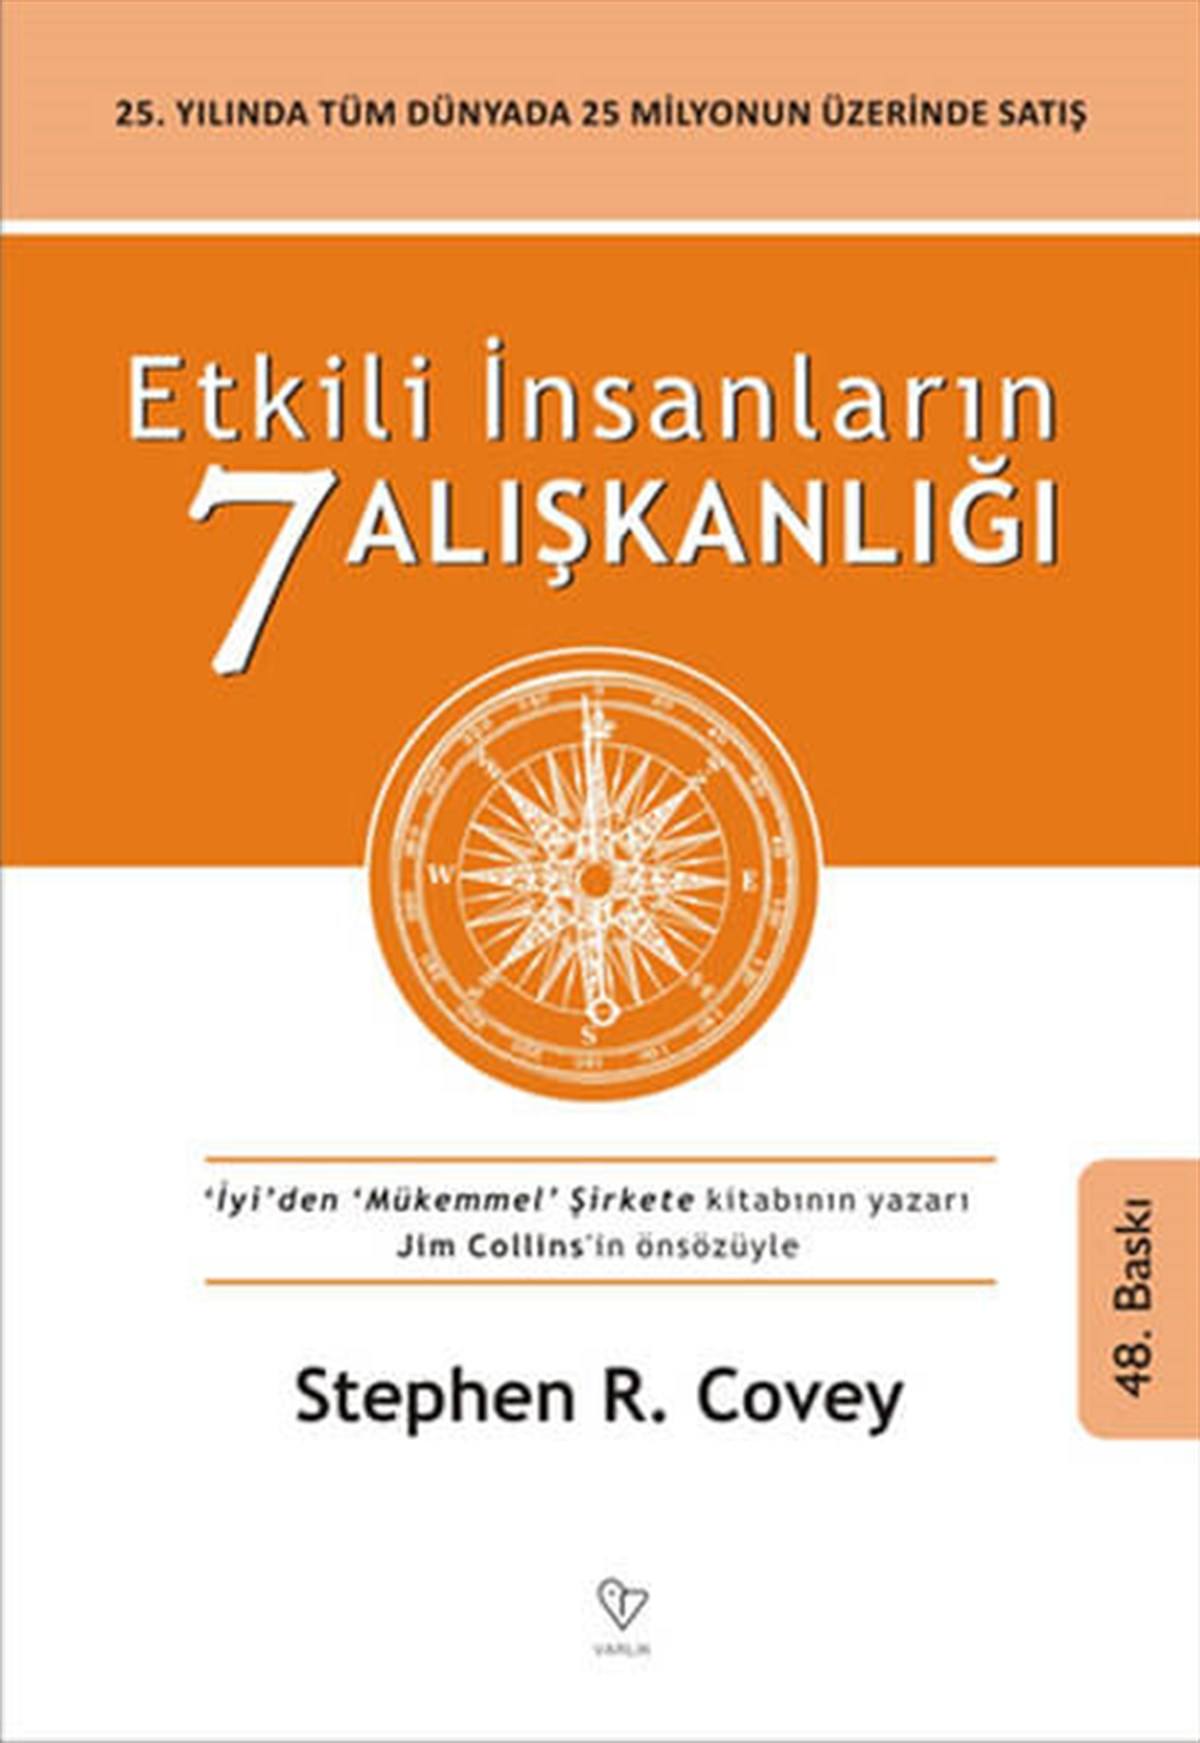 Etkili İnsanların 7 Alışkanlığı - Stephen R. Covey